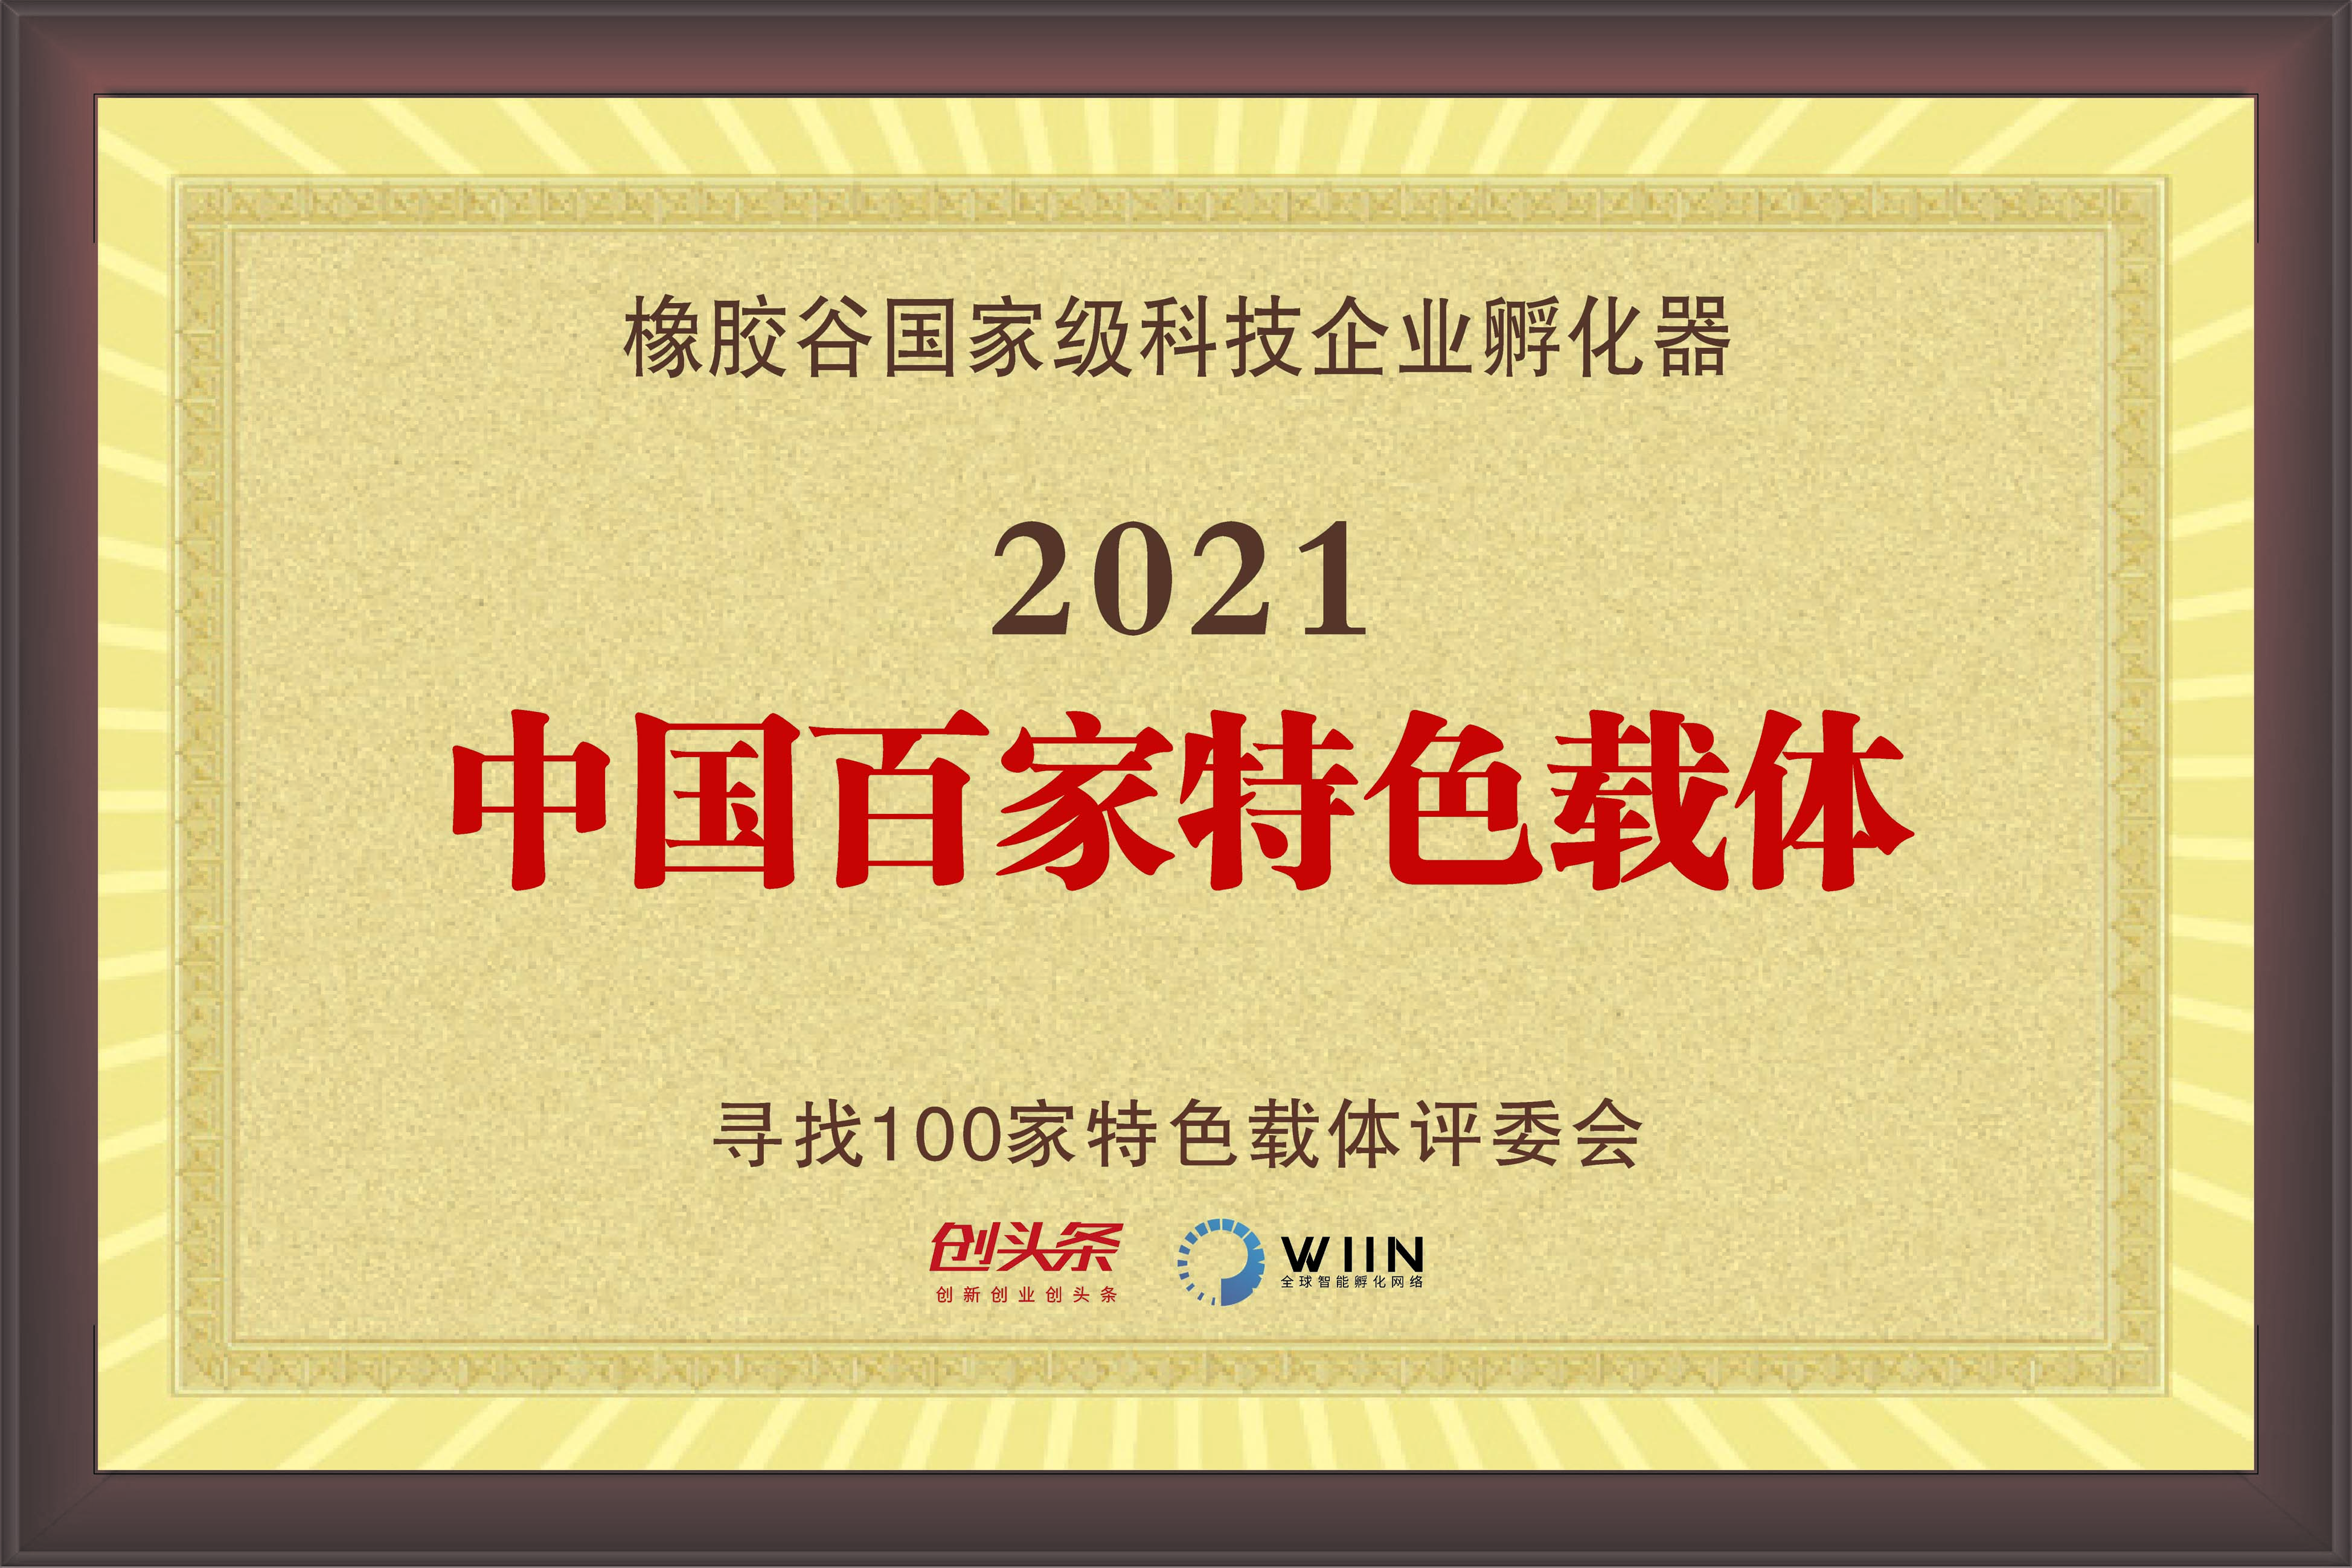 2021中国百家特色载体-国家科技企业孵化器-寻找100家特色载体评委会